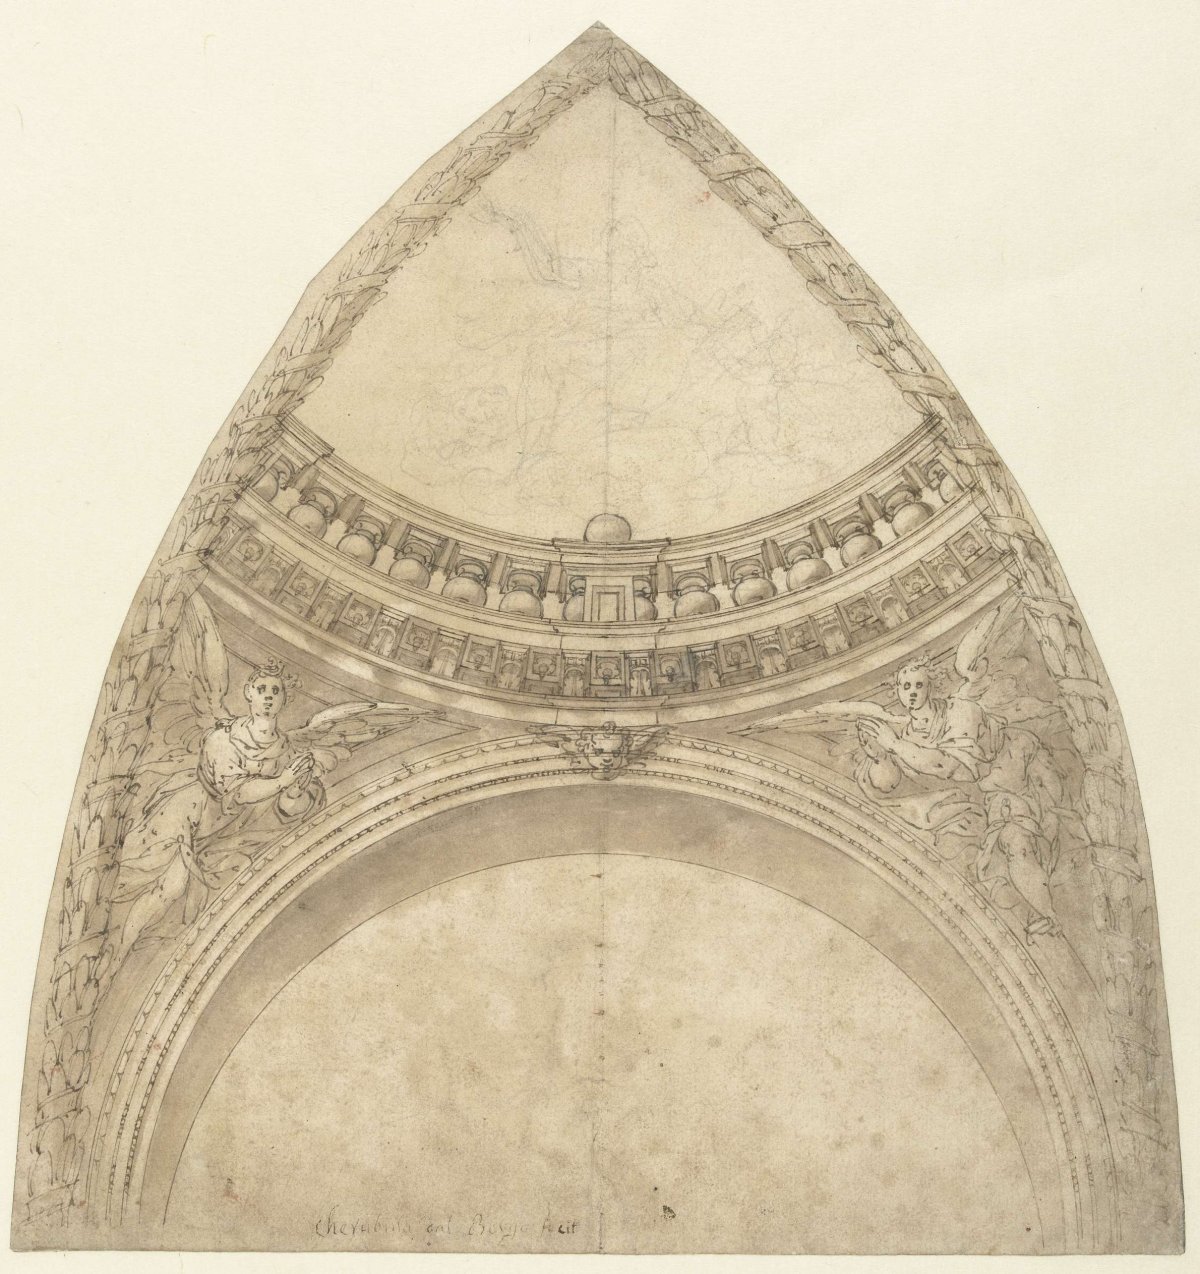 Design for a dome segment, Cherubino Alberti, 1563 - 1615